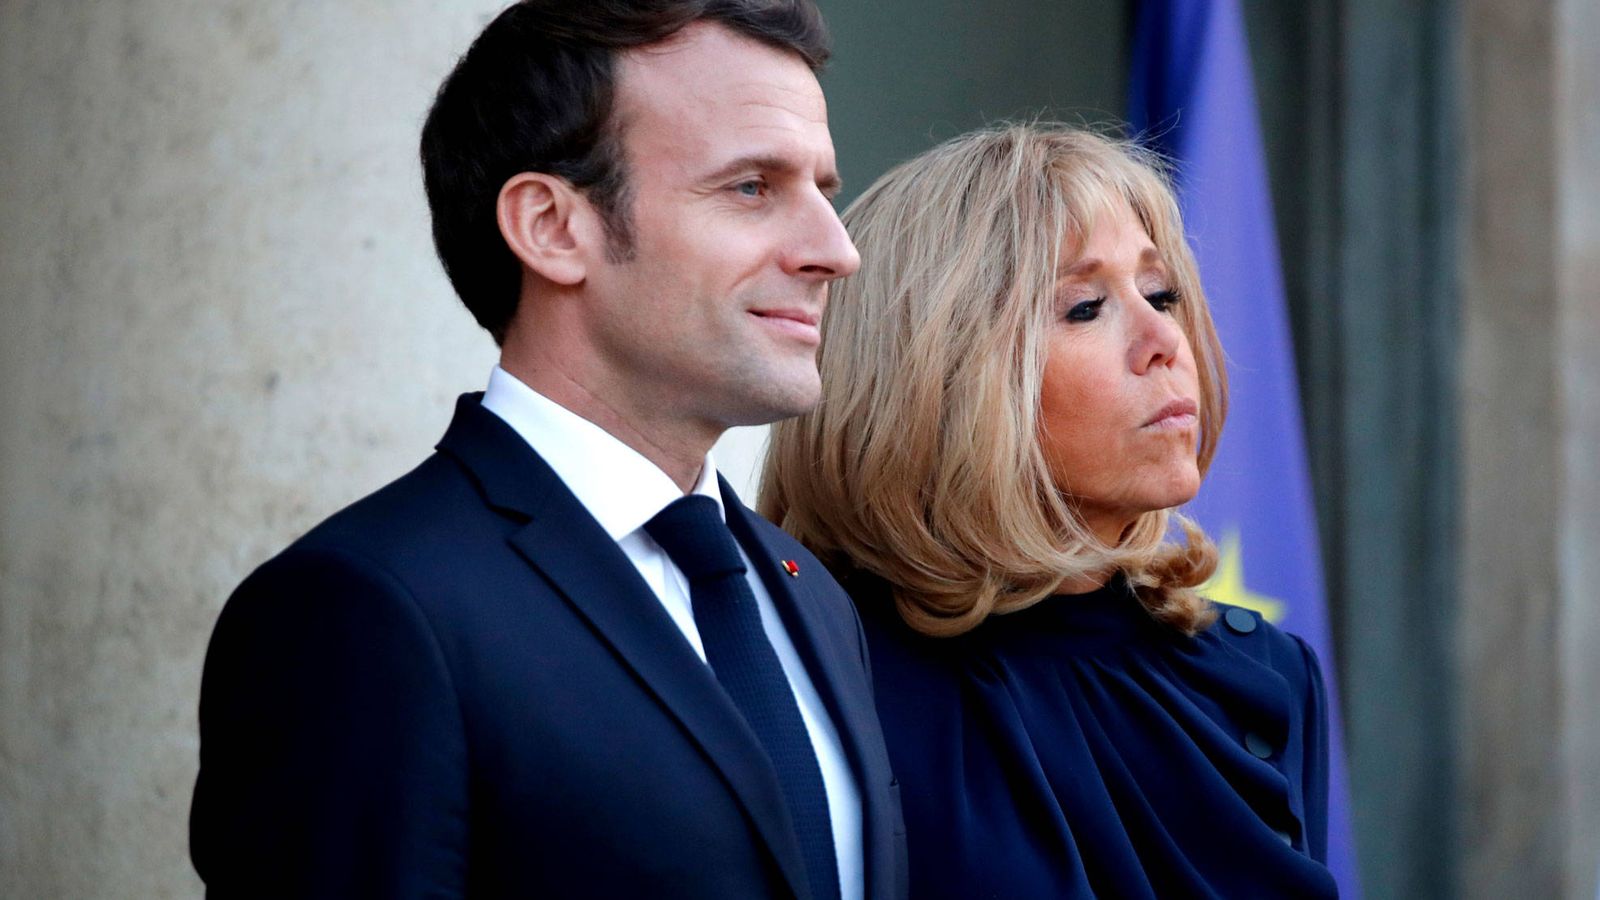 Foto: El matrimonio Macron, en una imagen de archivo. (Reuters)